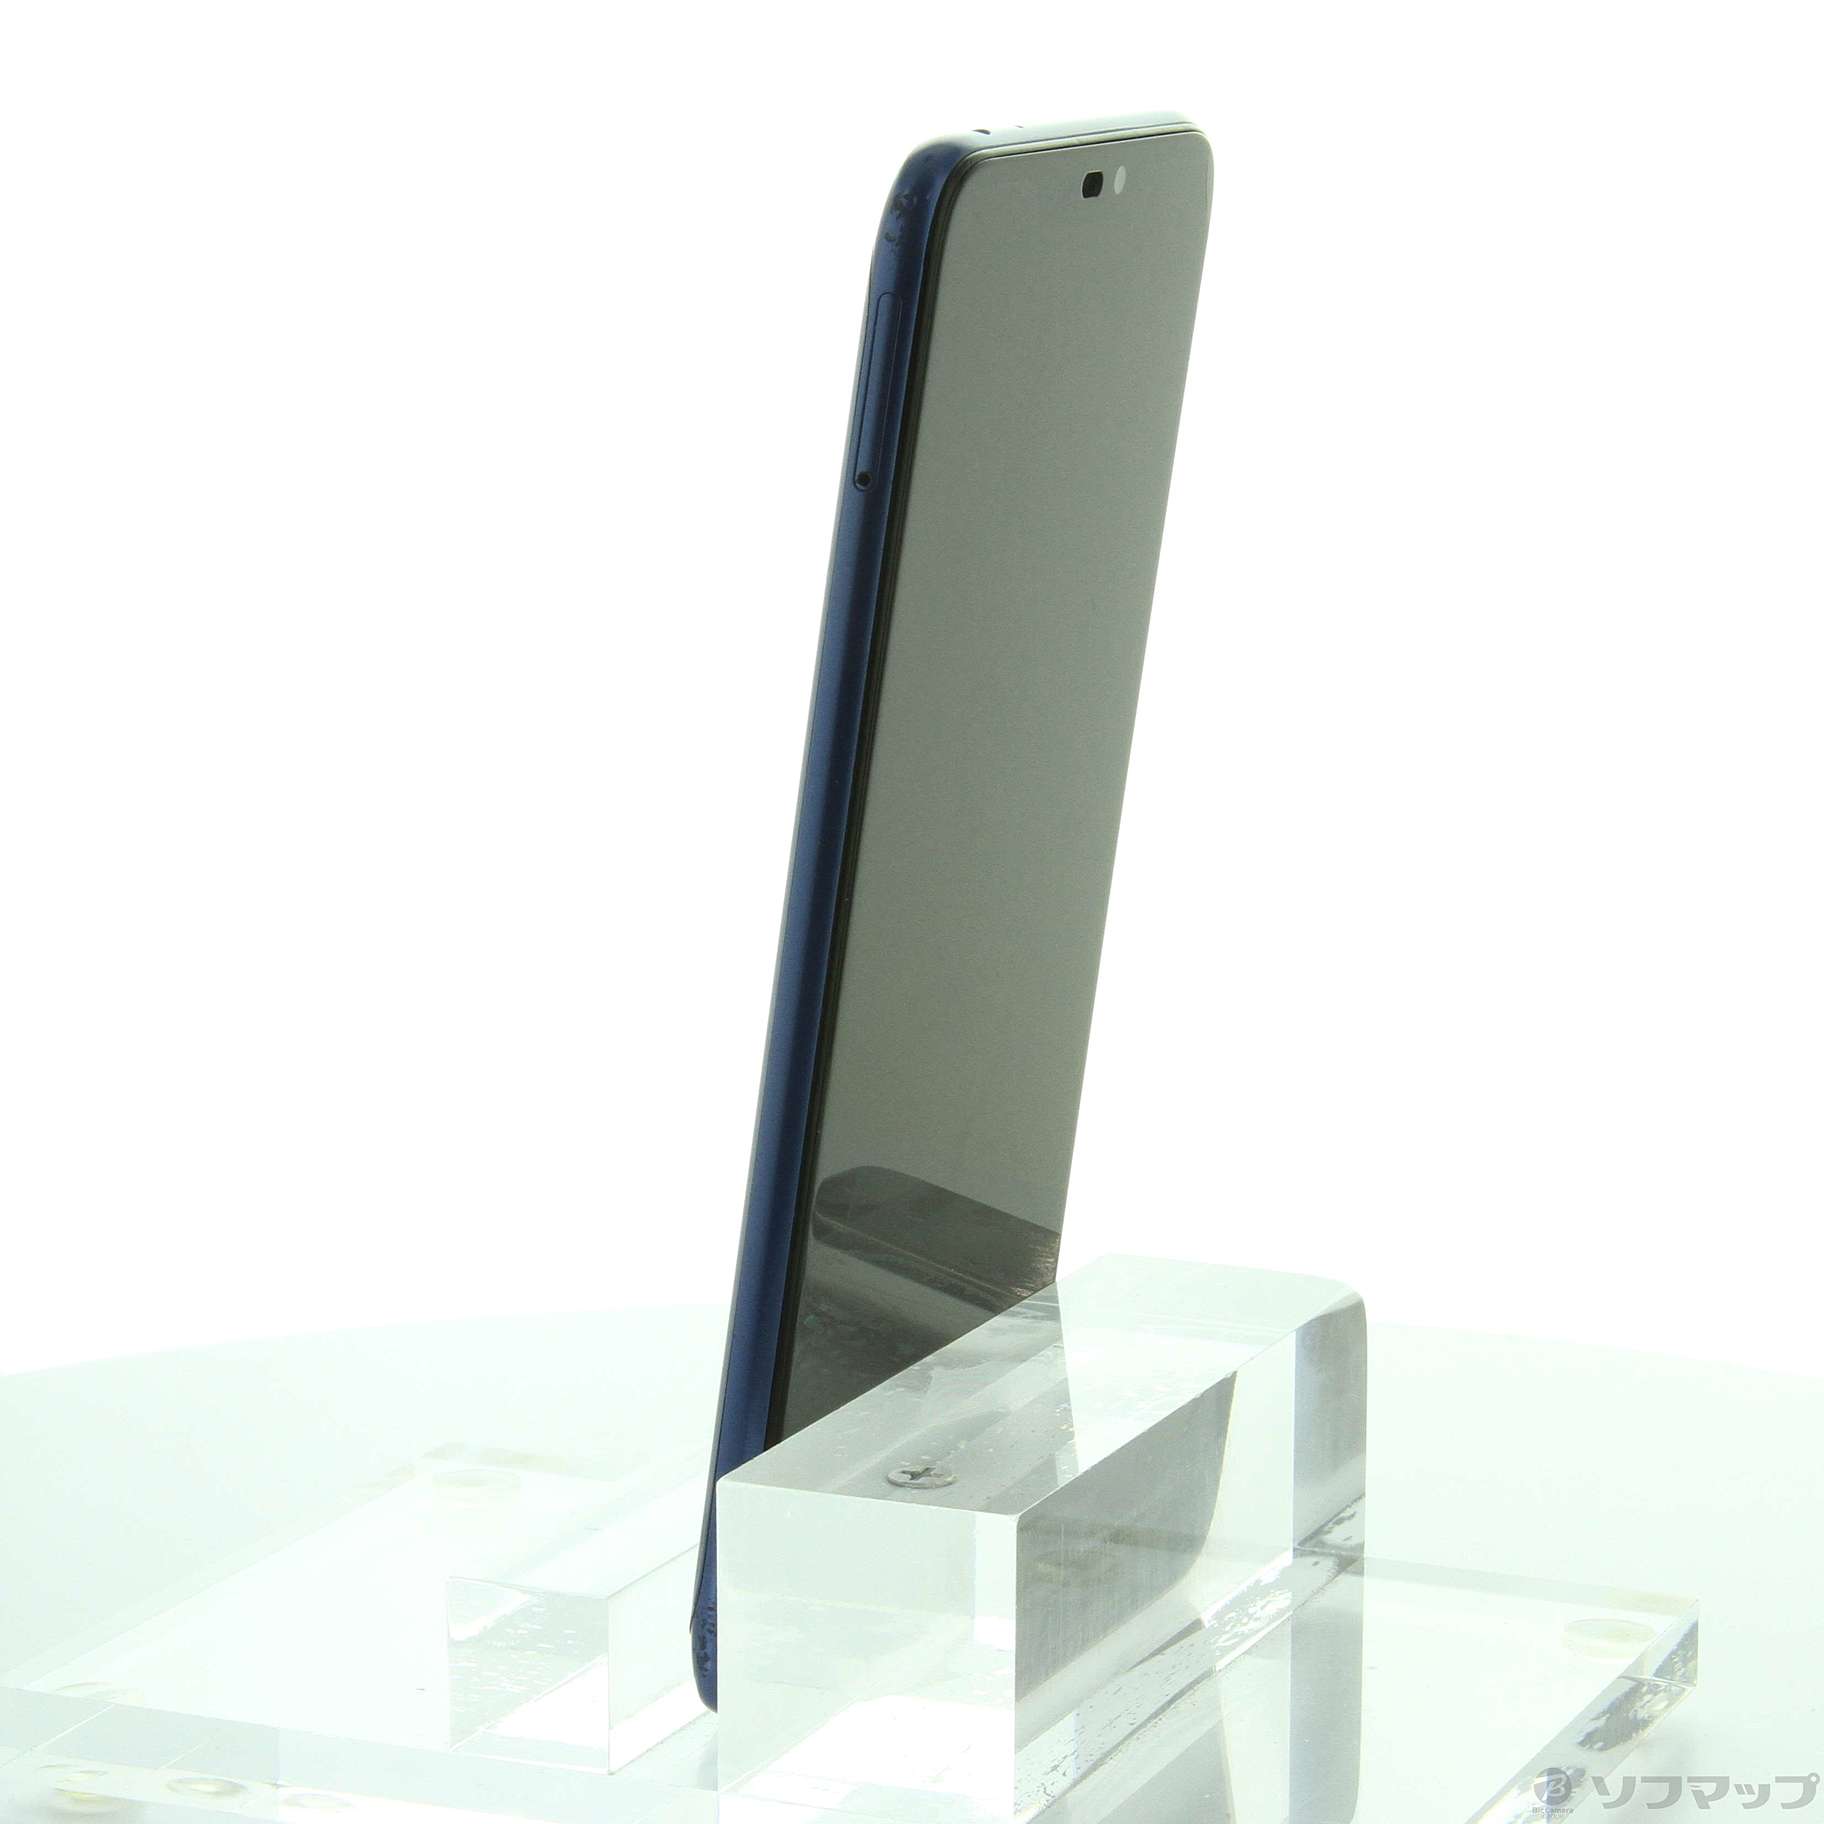 中古】ZenFone Max M2 64GB スペースブルー ZB633KL-BL64S4 SIMフリー ...